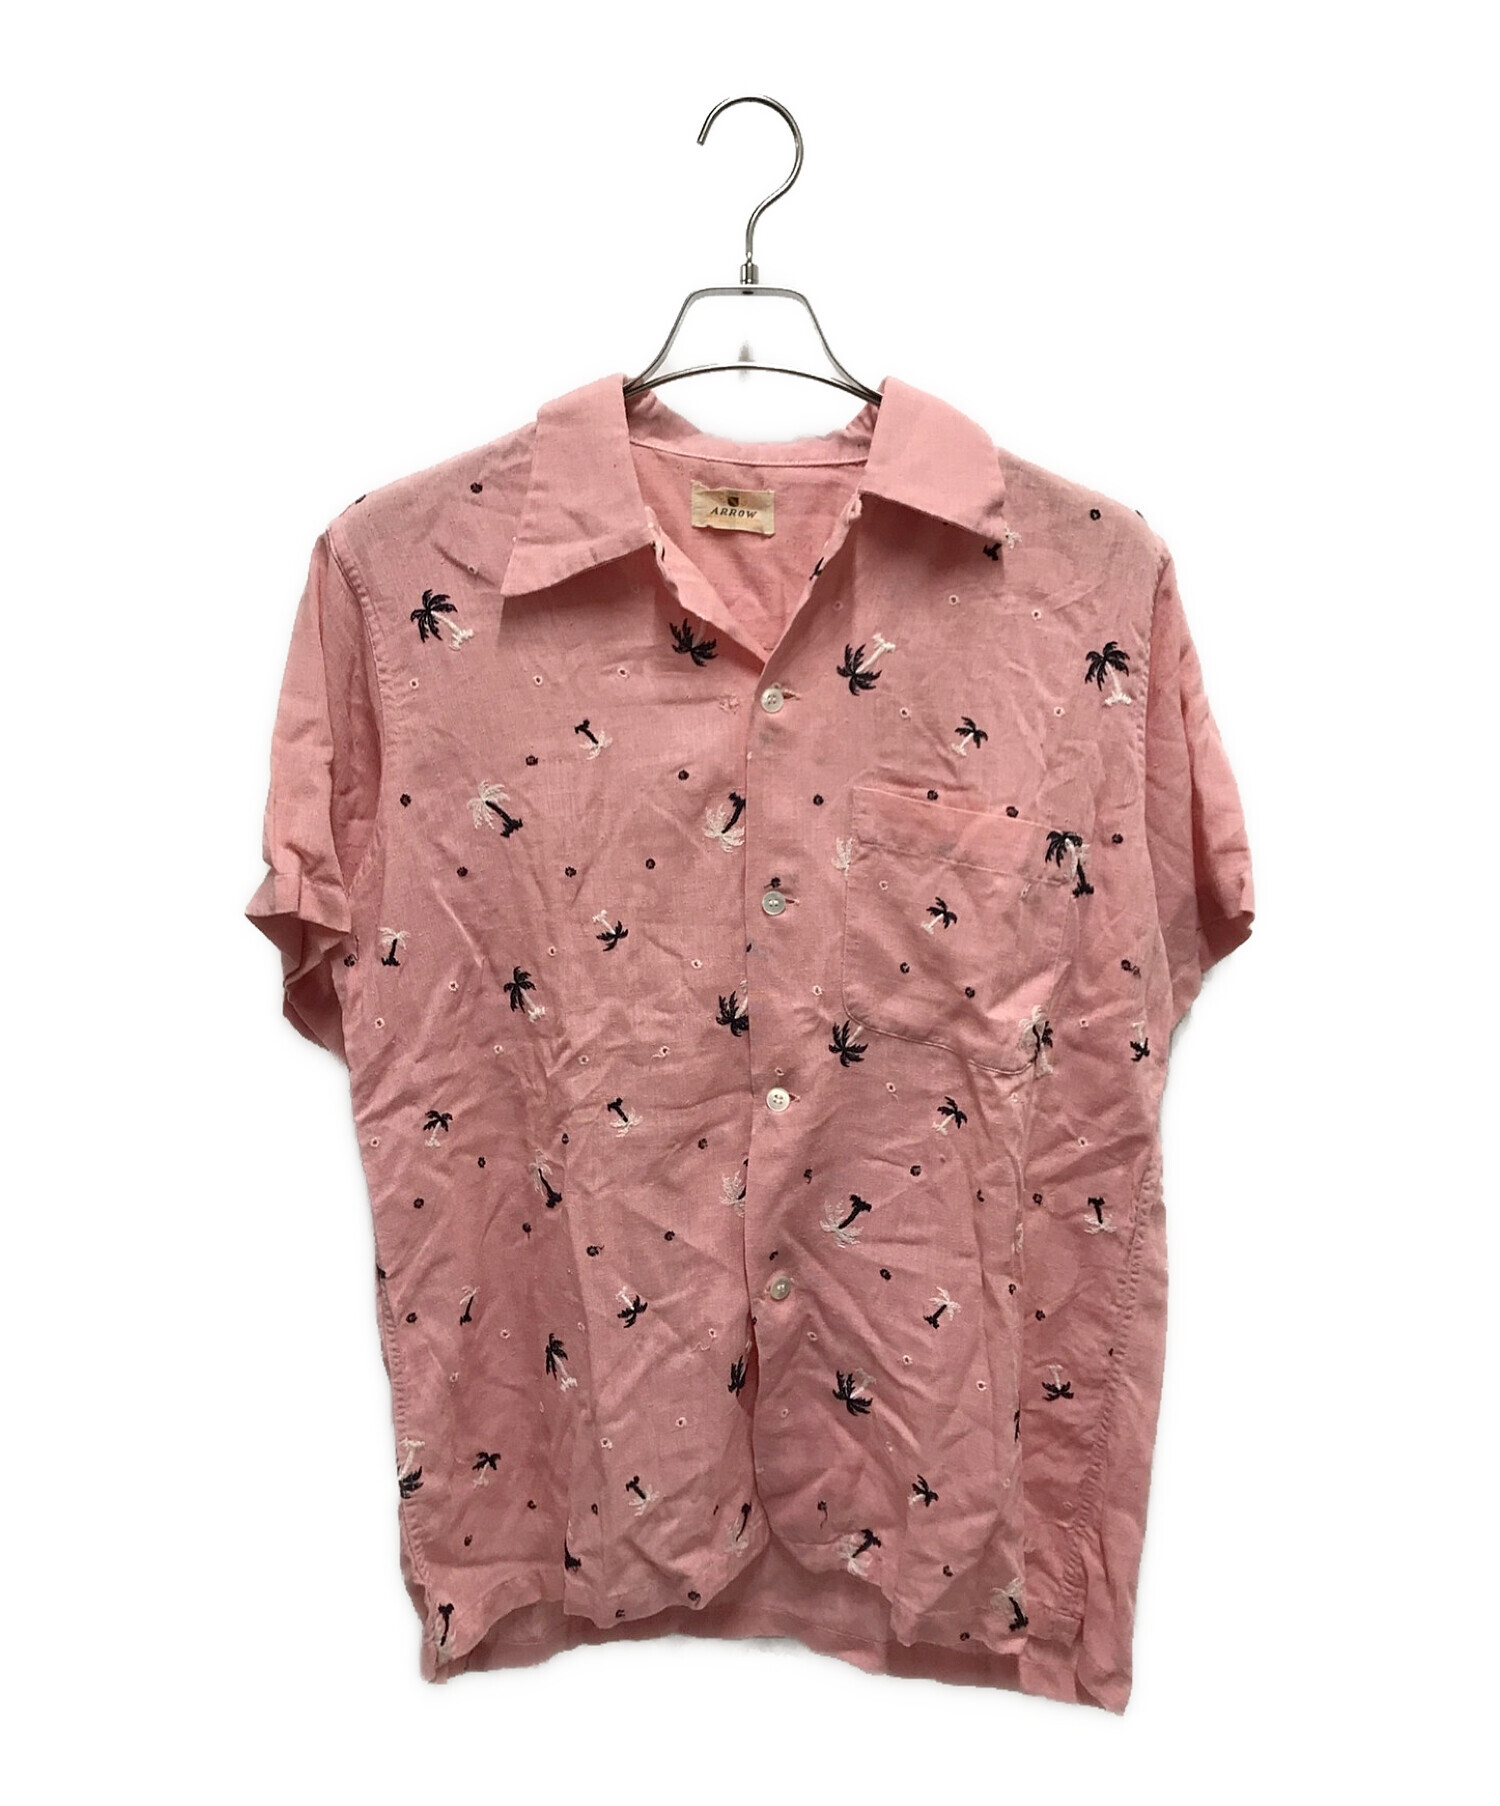 ARROW (アロー) 50‘sヴィンテージオープンカラーシャツ ピンク サイズ:下記参照